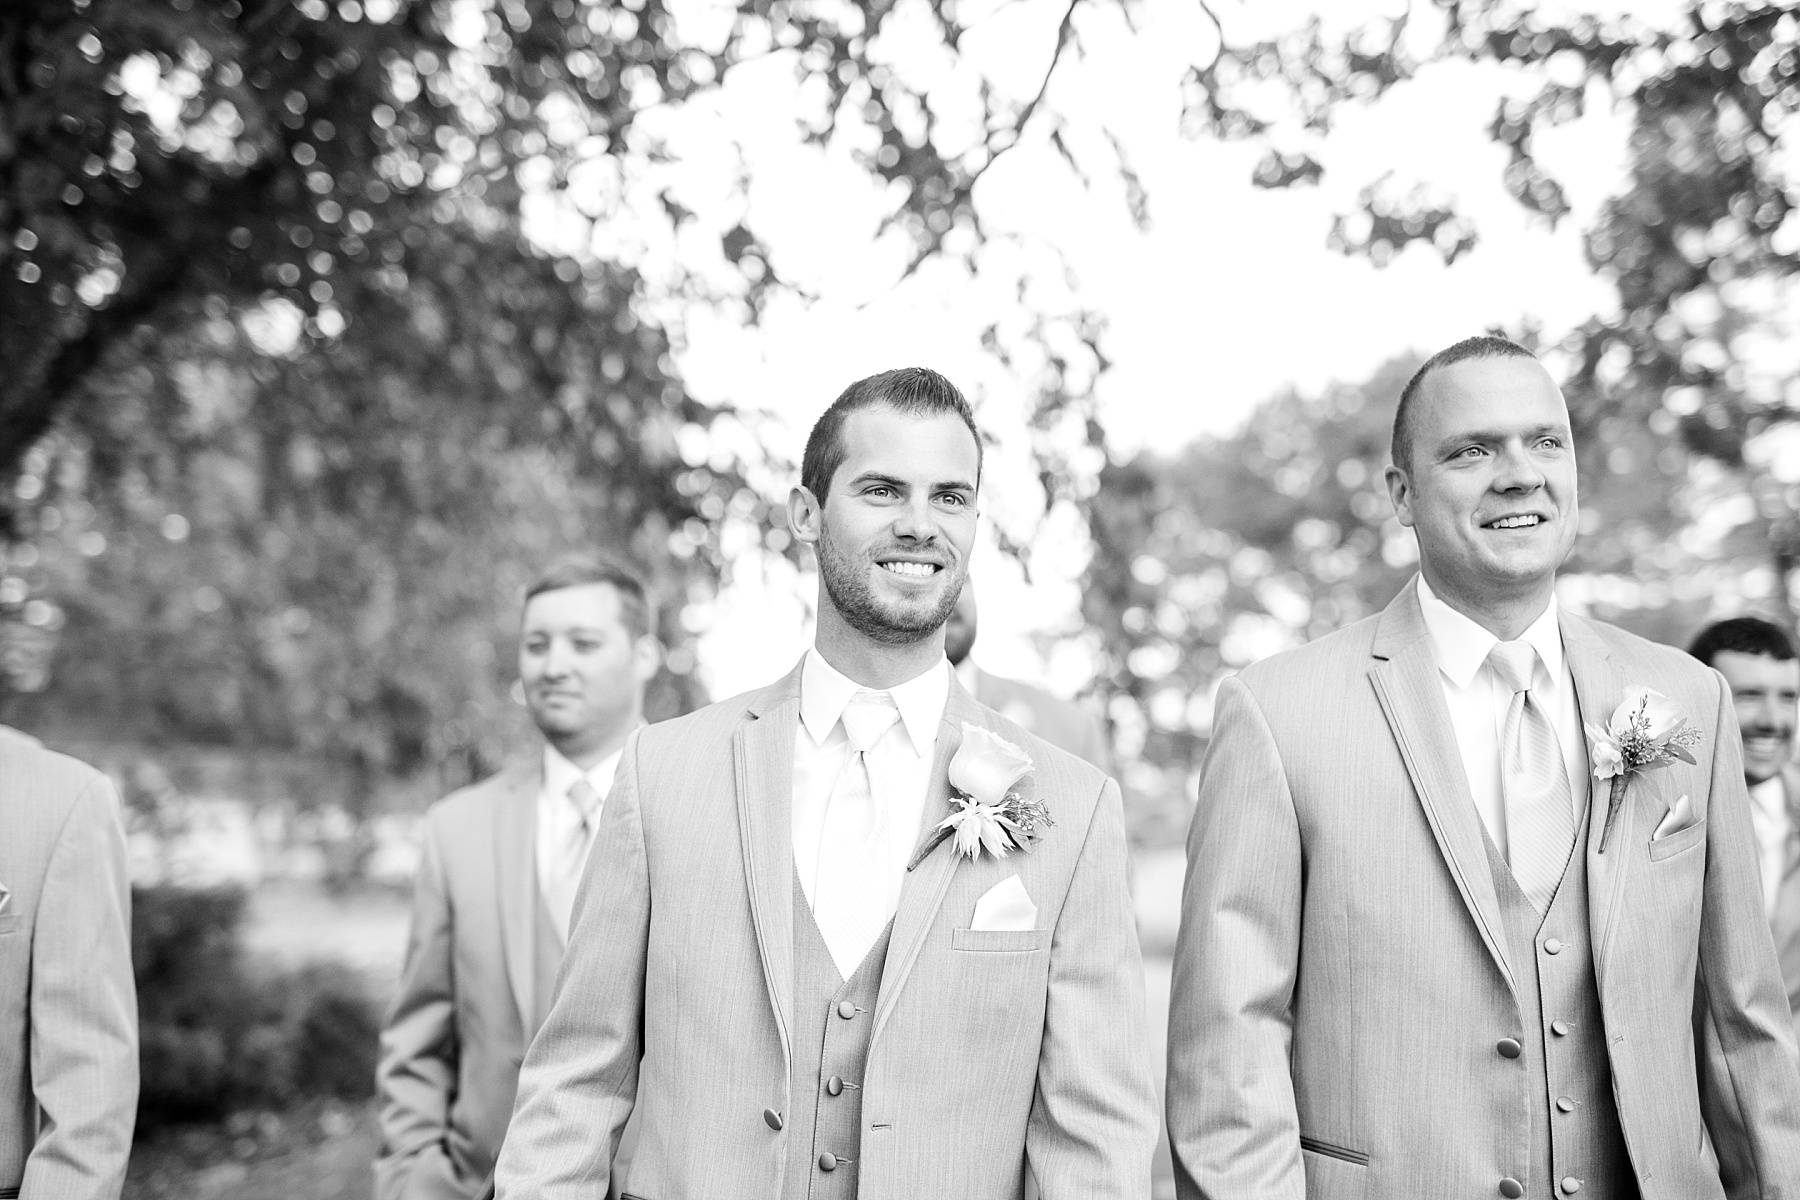 groom and groomsmen walking